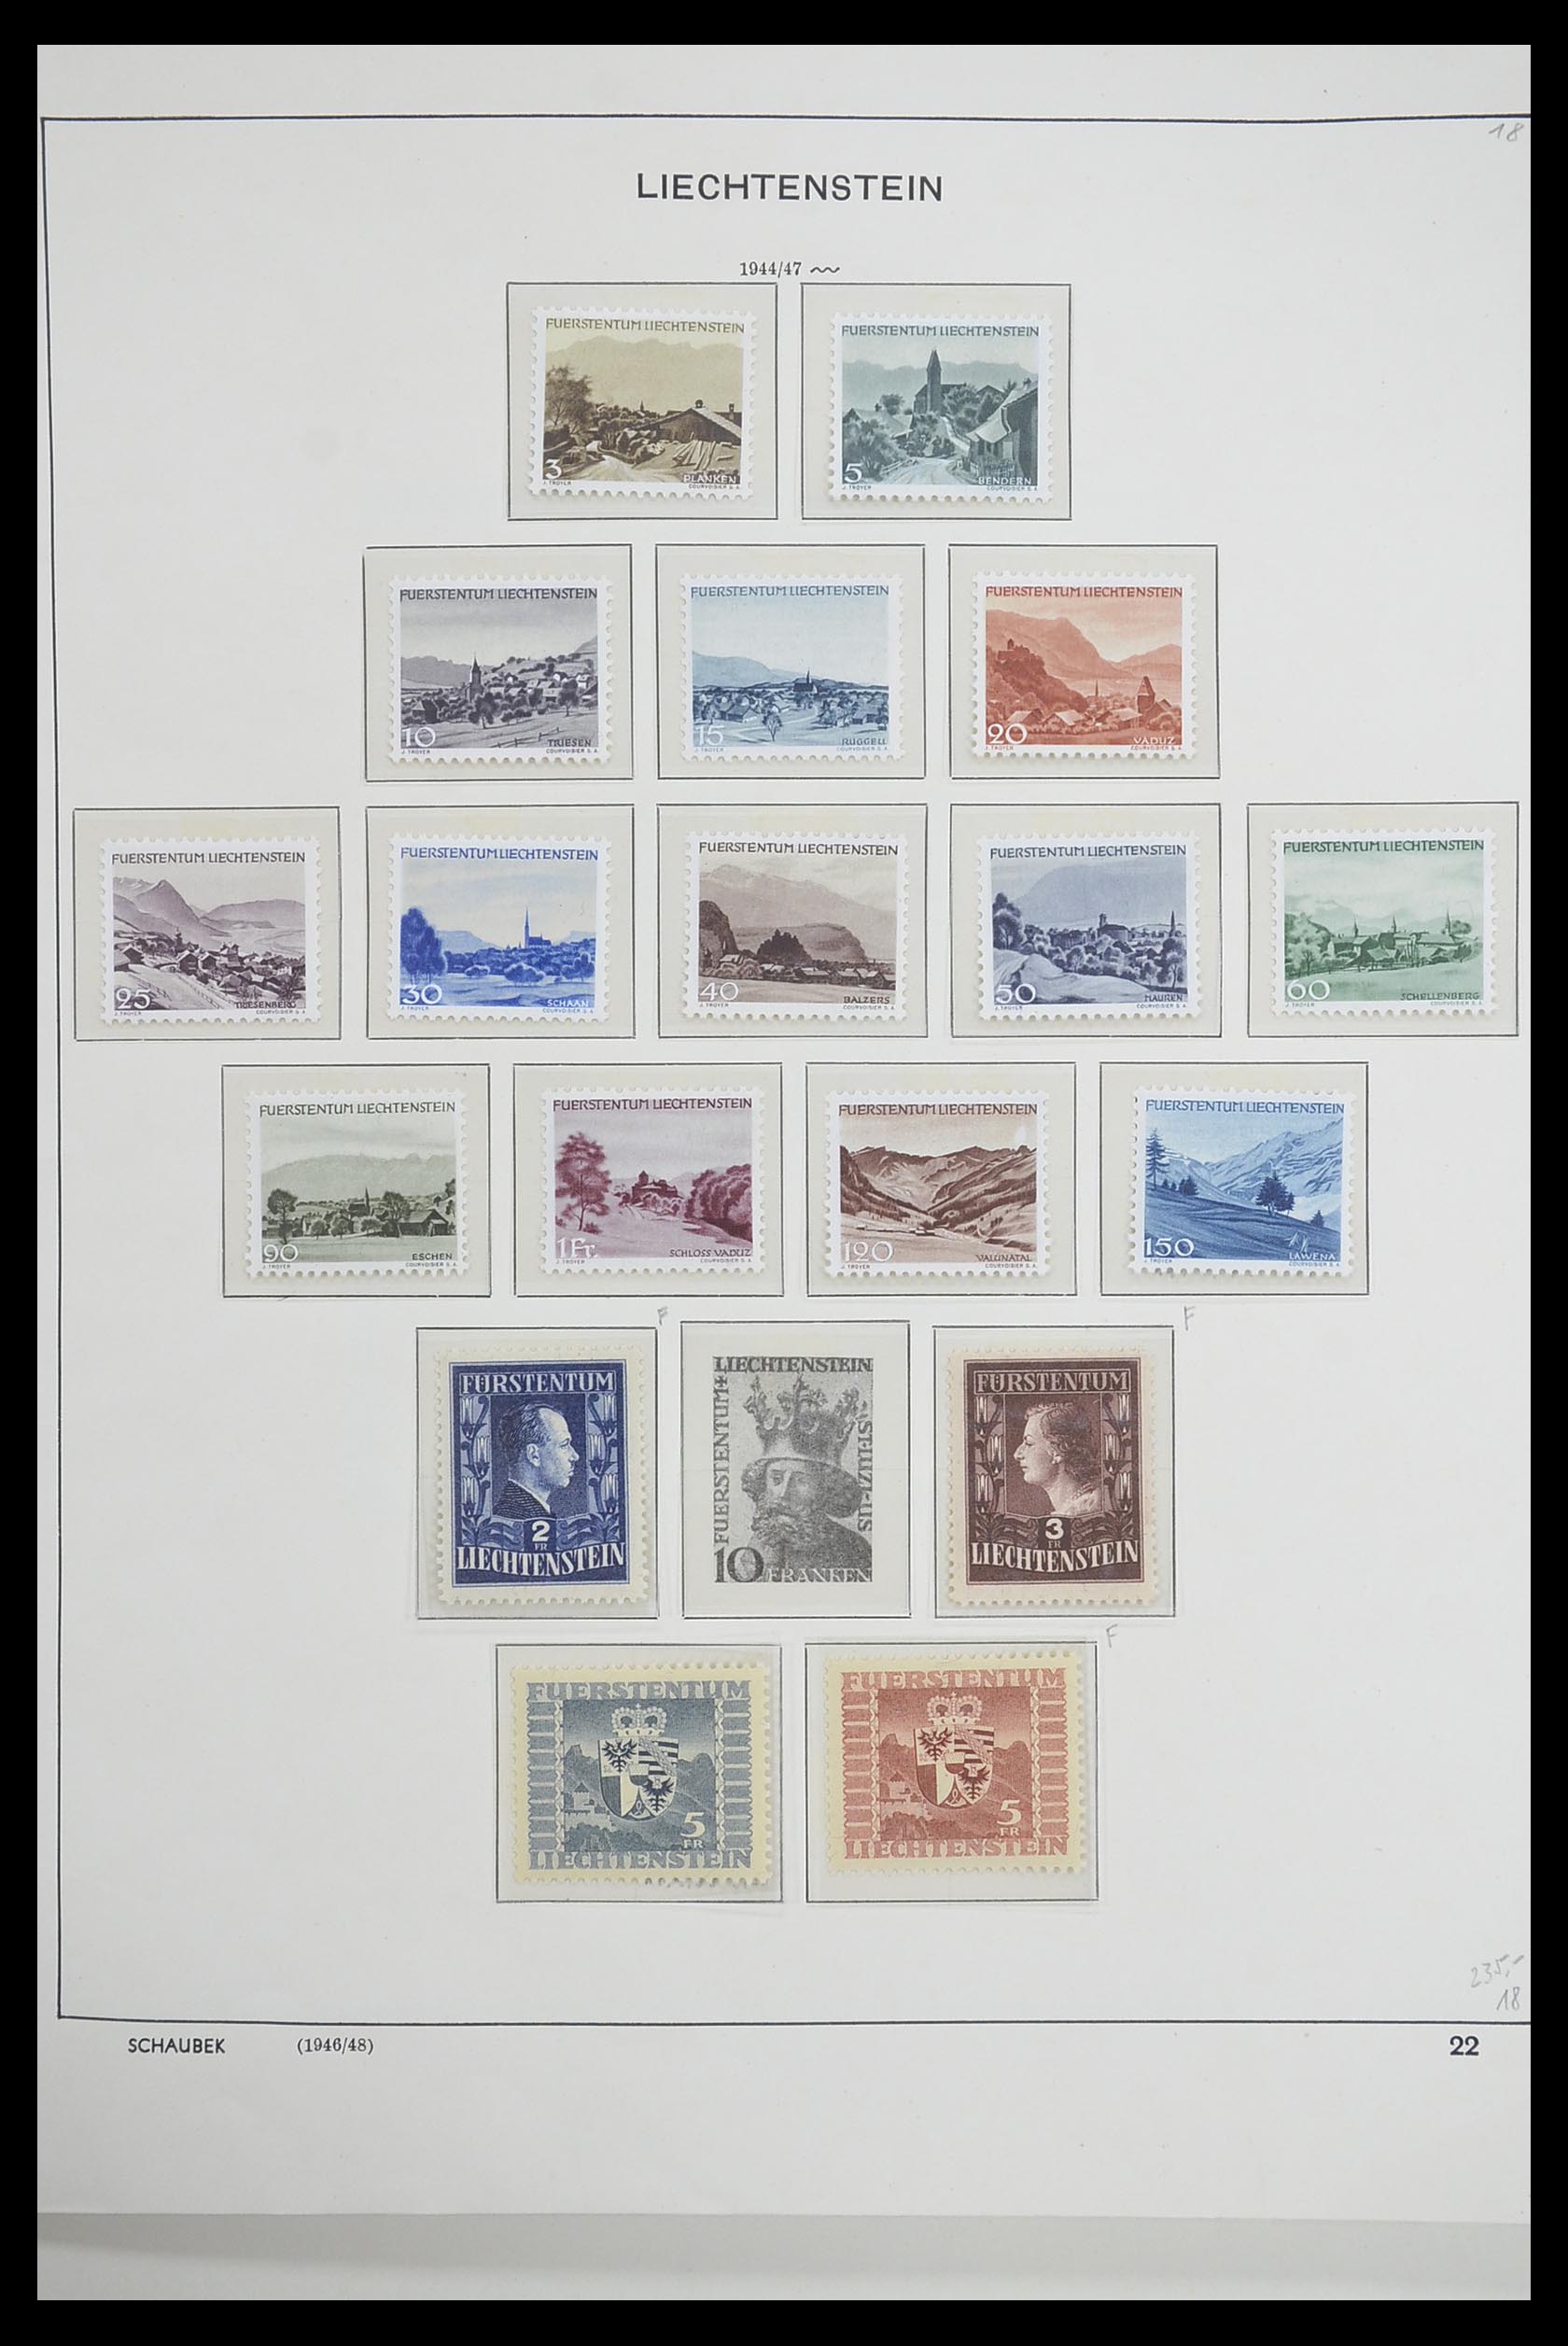 33274 019 - Stamp collection 33274 Liechtenstein 1912-1996.